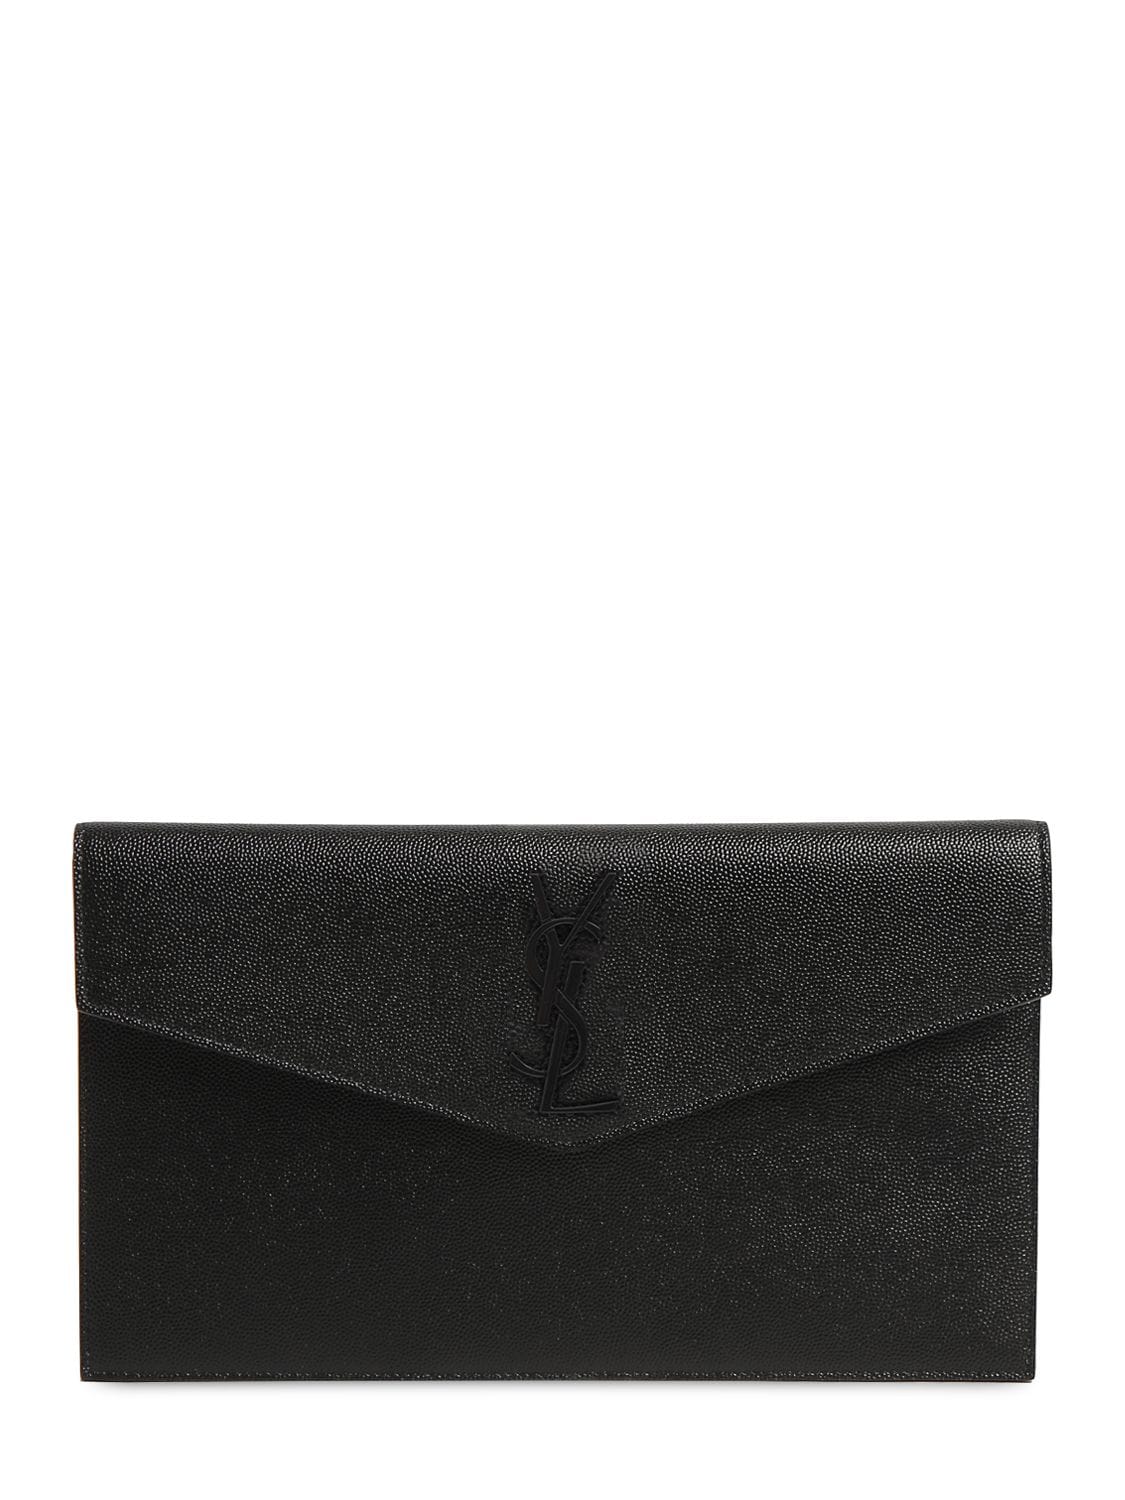 Saint Laurent black Leather Uptown Clutch Bag